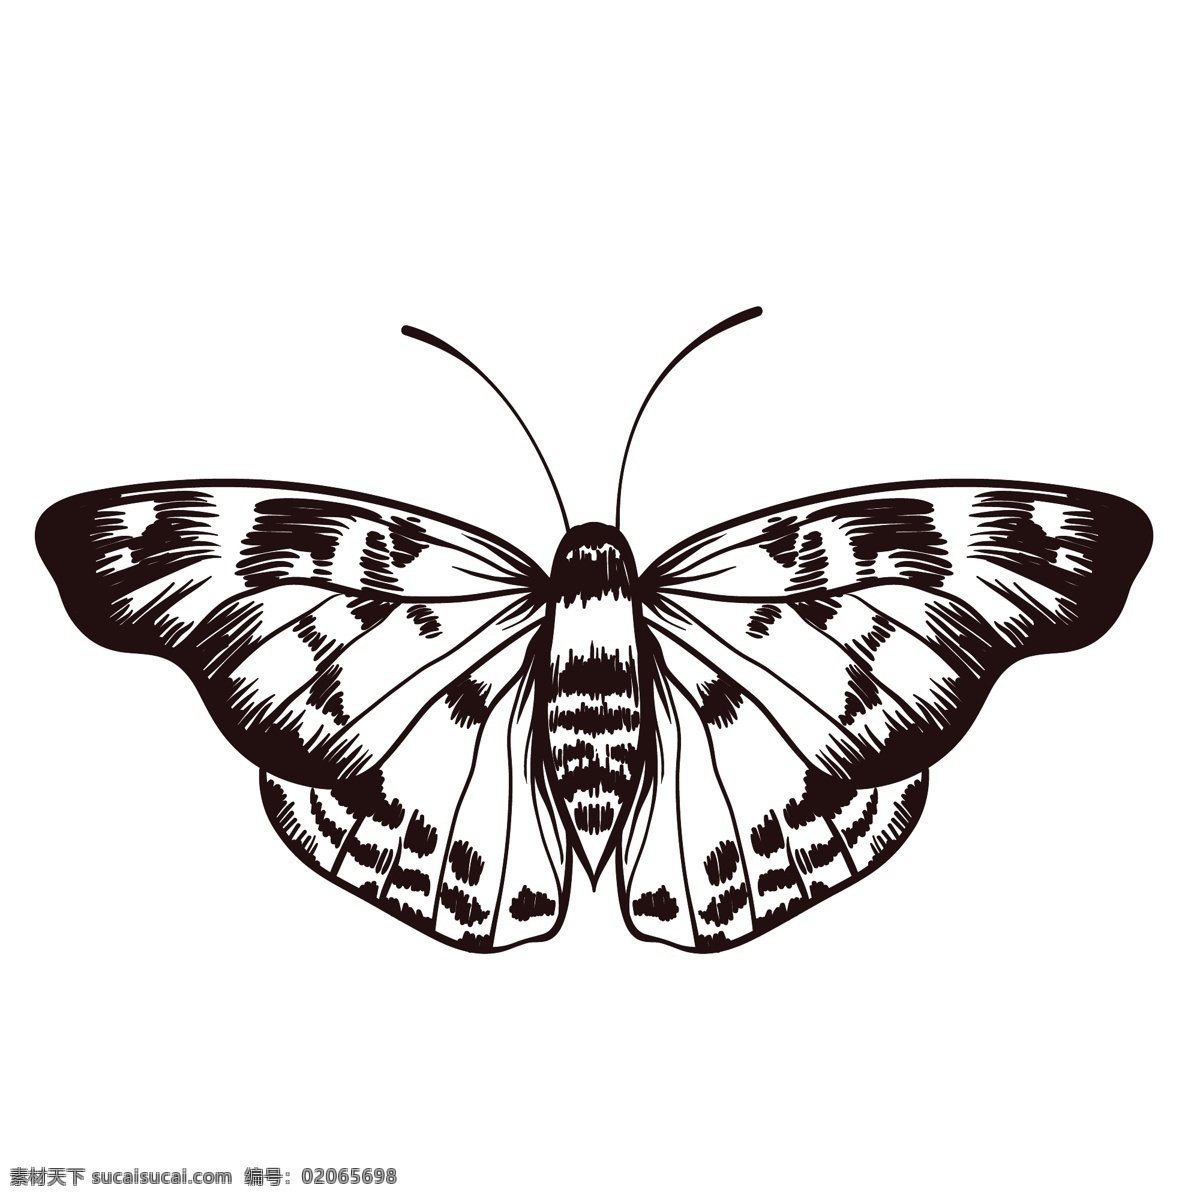 素描 绘画 昆虫 蝴蝶 简笔绘画 线条 纯色 蜻蜓 插画 图案 文化艺术 绘画书法